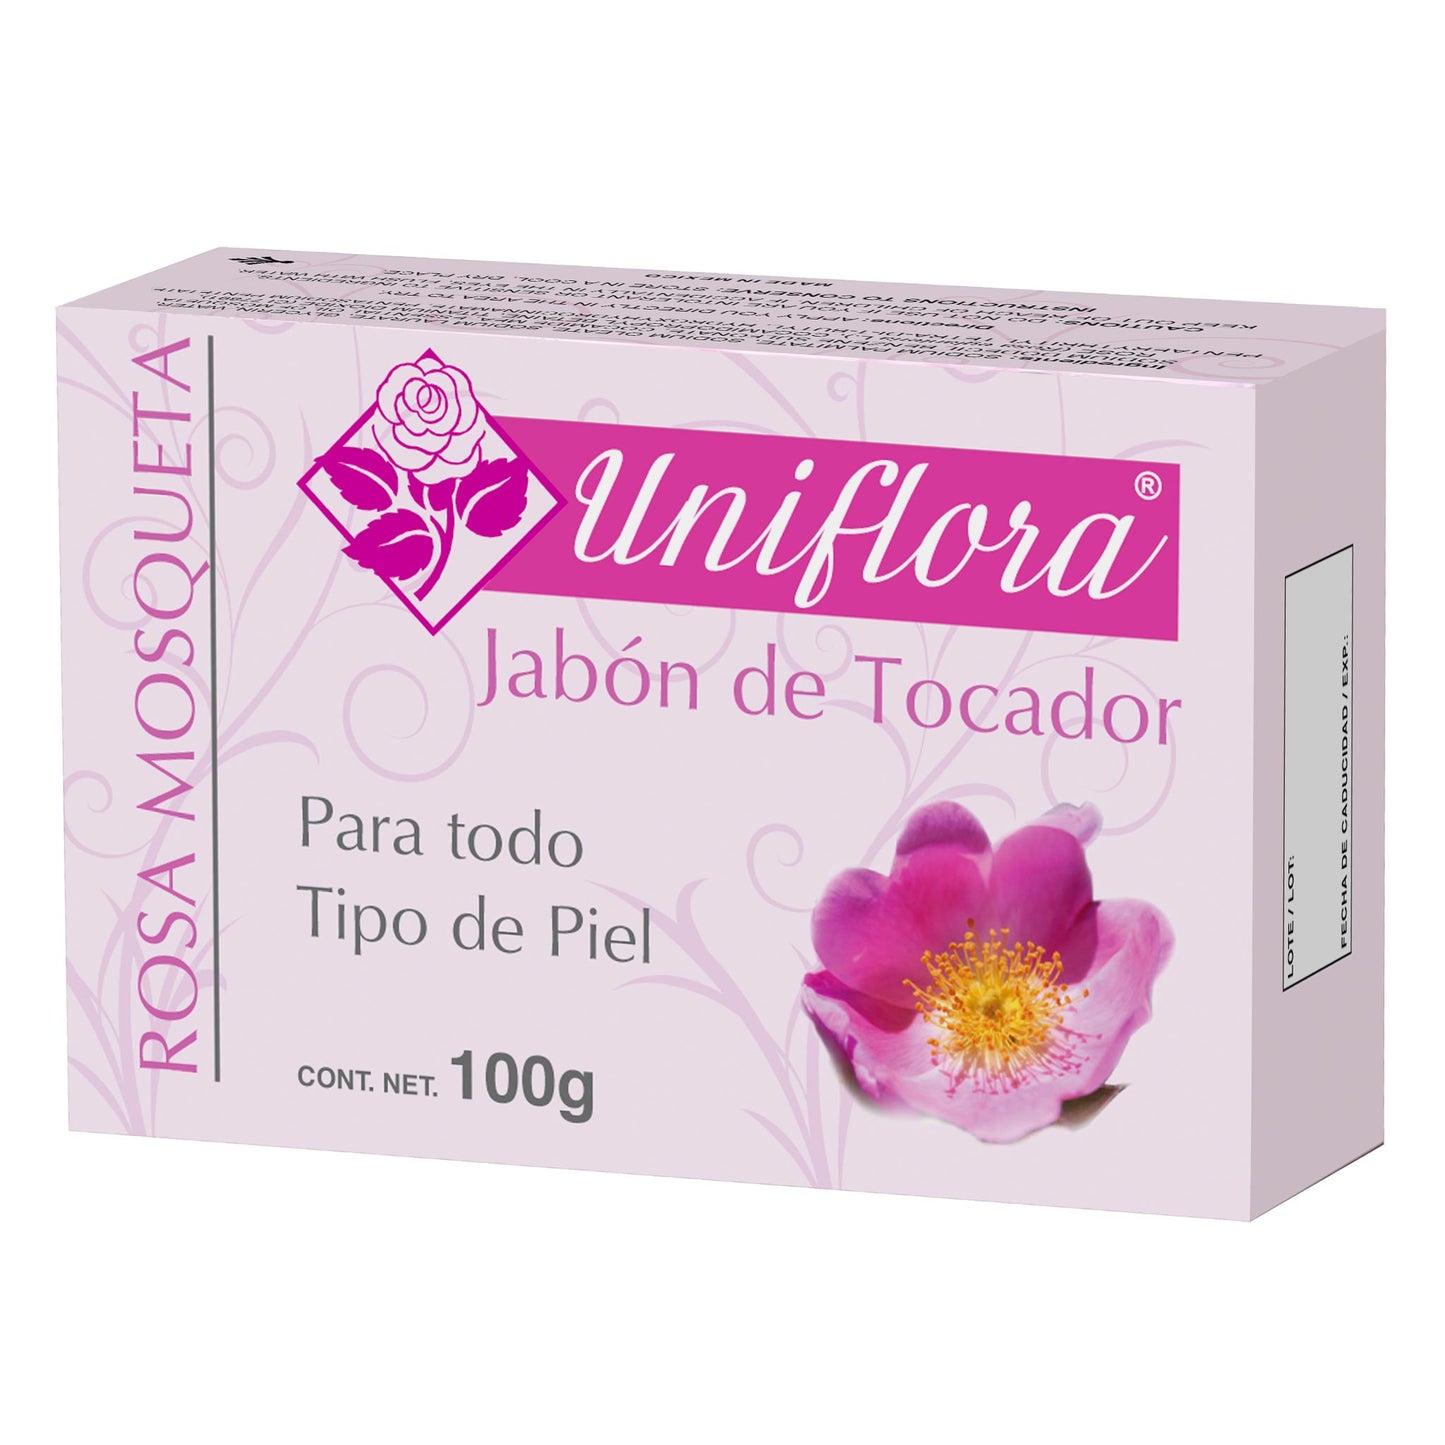 UNIFLORA ® jabón 100g